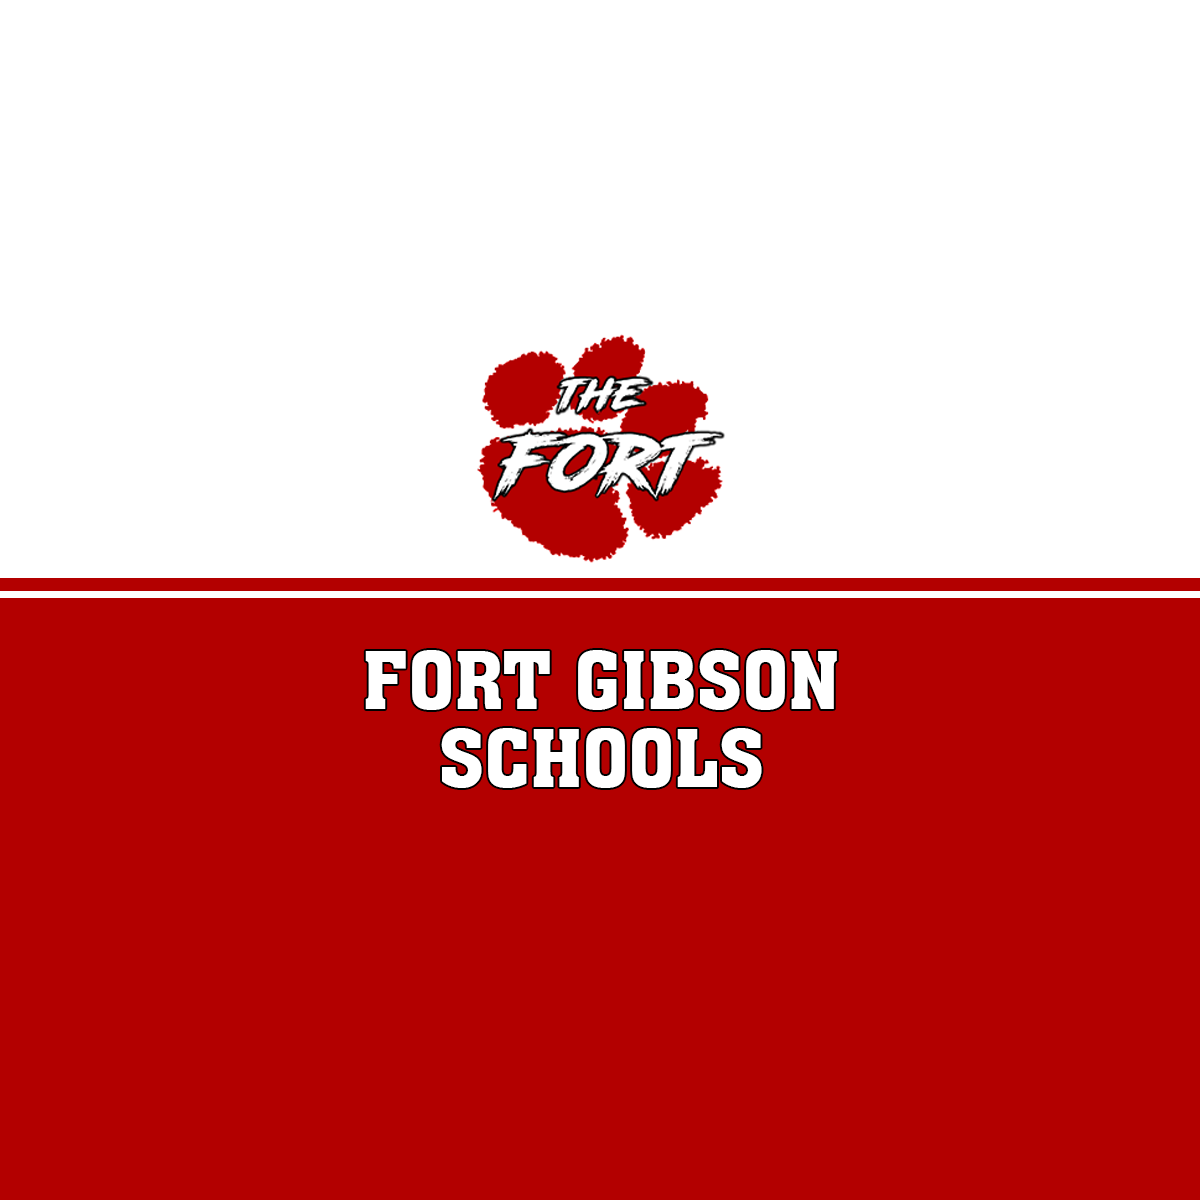 Fort Gibson Public Schools